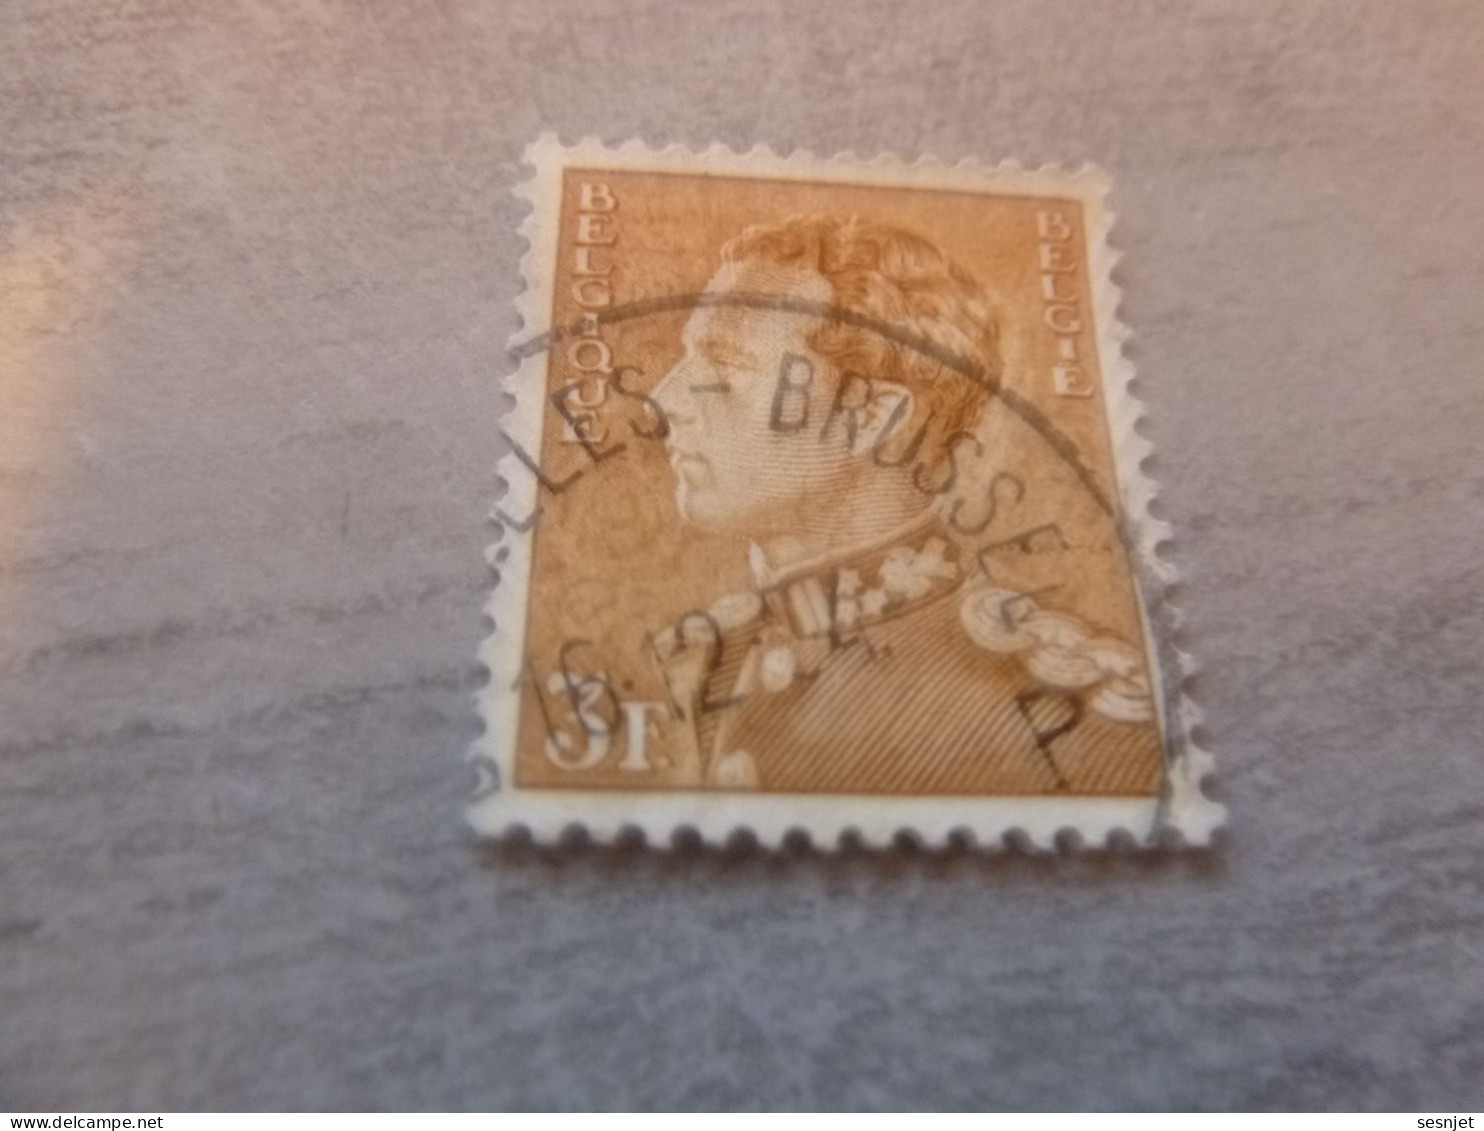 Belgique - Roi Léopold - 3f. - Orange - Oblitéré - Année 1951 - - Used Stamps